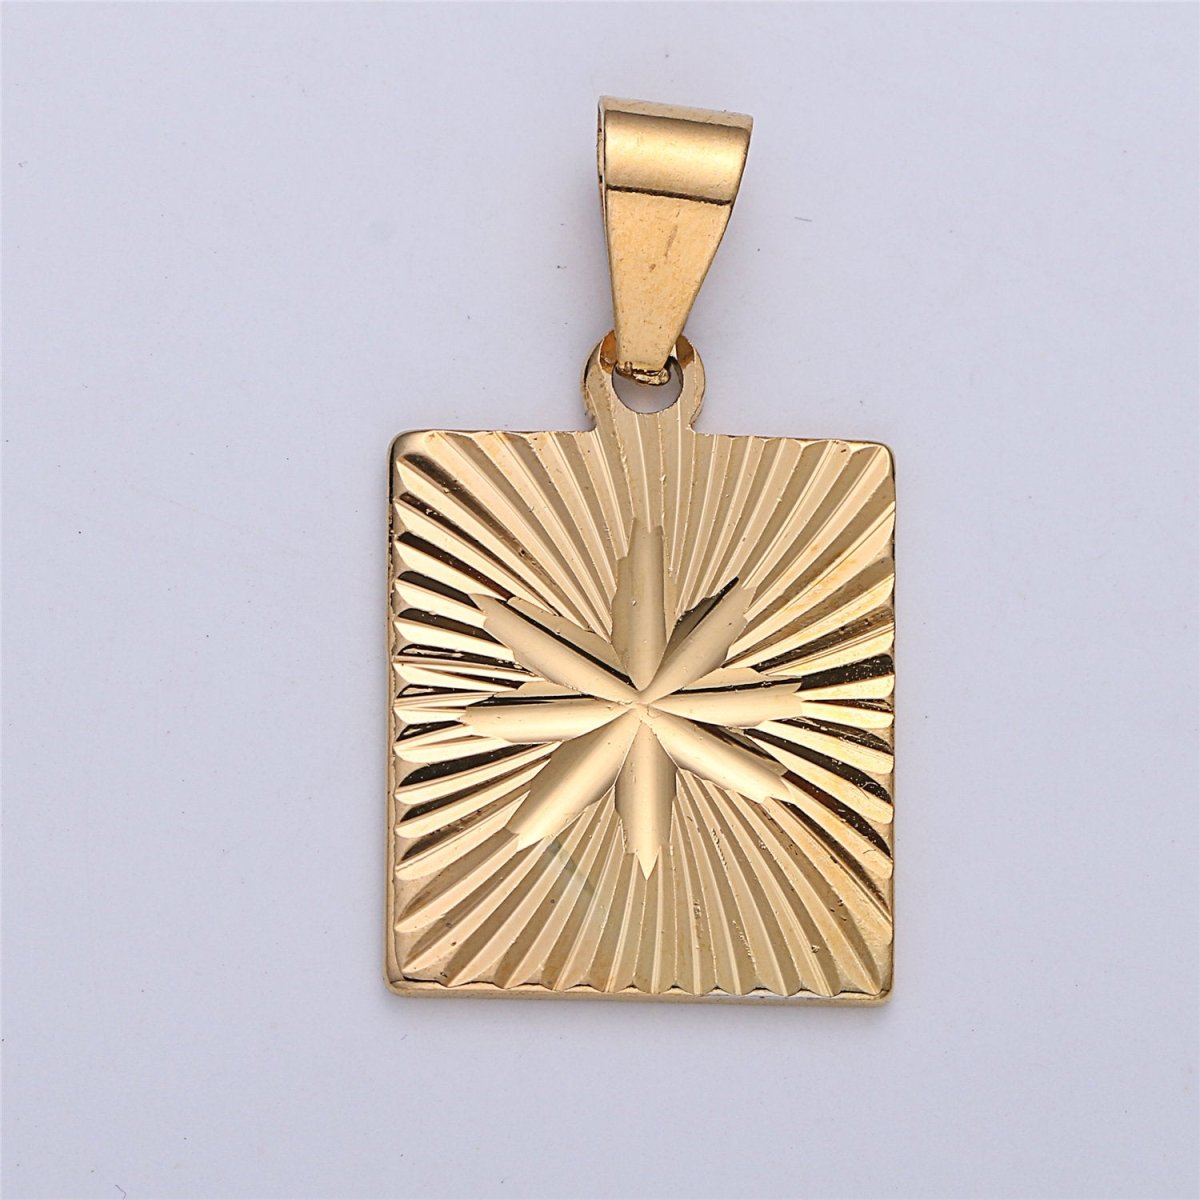 Gold Star Pendant, 18K Gold Filled Pendant, celestial medallion, Square pendant, gold starburst Charm I-161 - DLUXCA